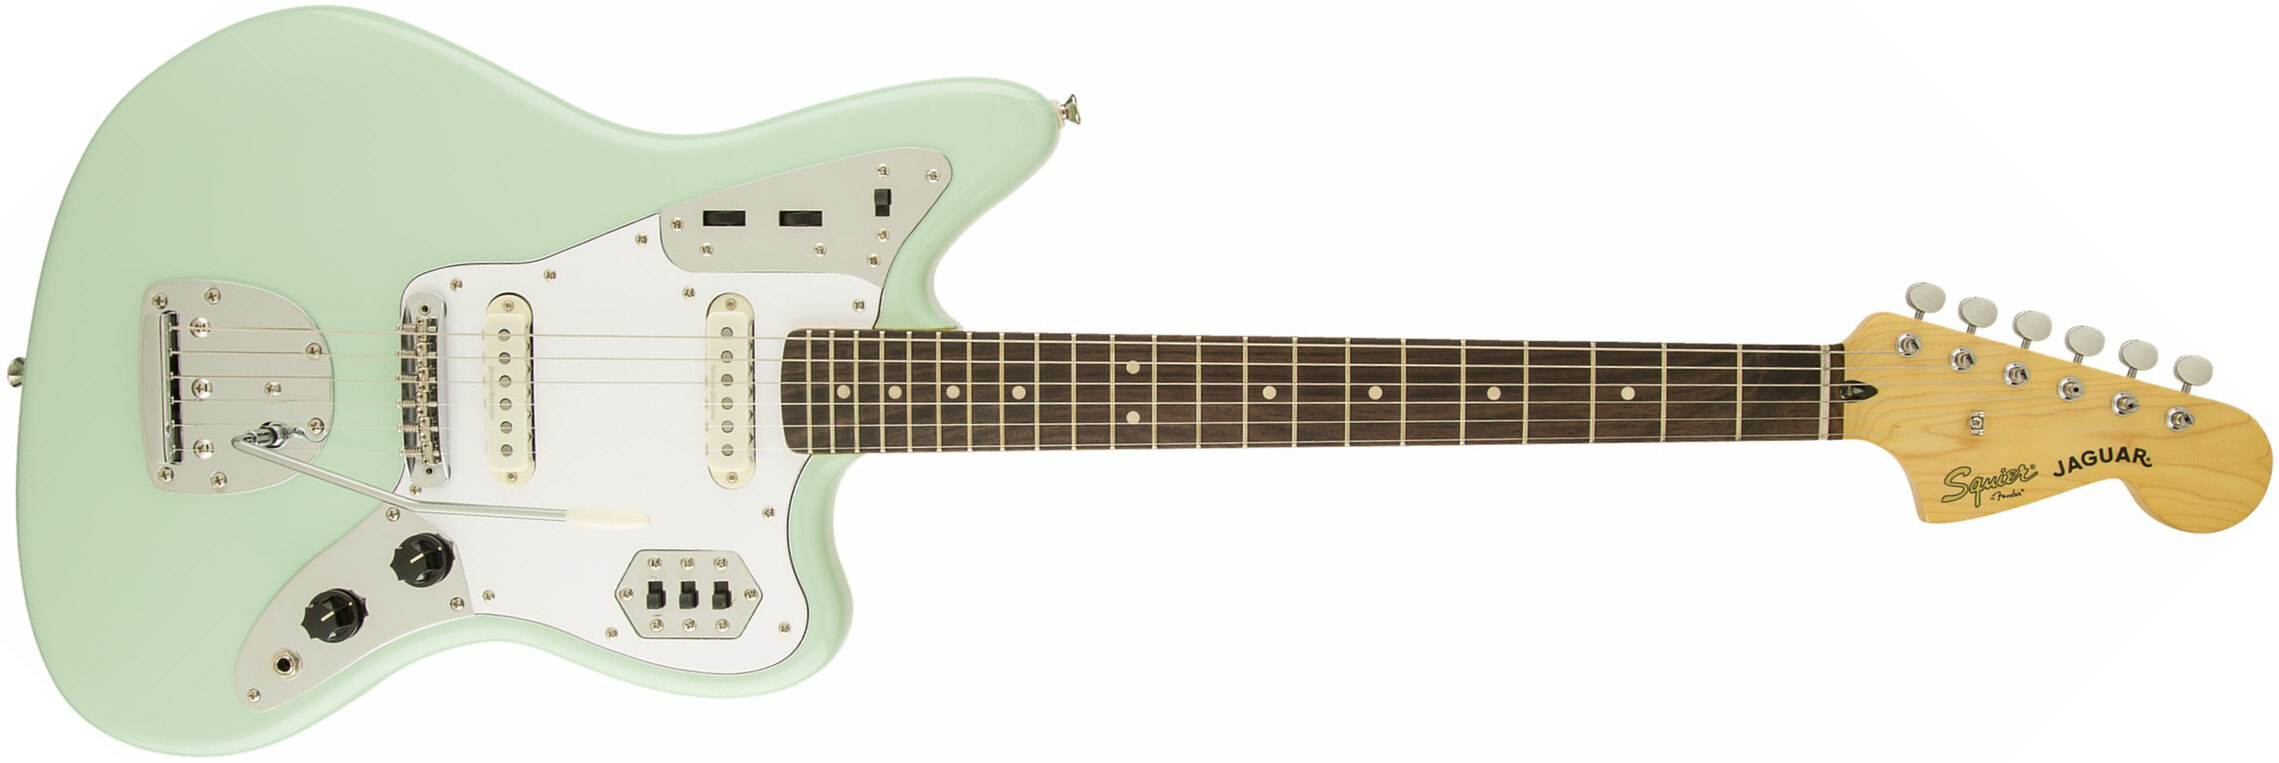 Squier Jaguar Vintage Modified Ss Lau - Surf Green - Str shape electric guitar - Main picture